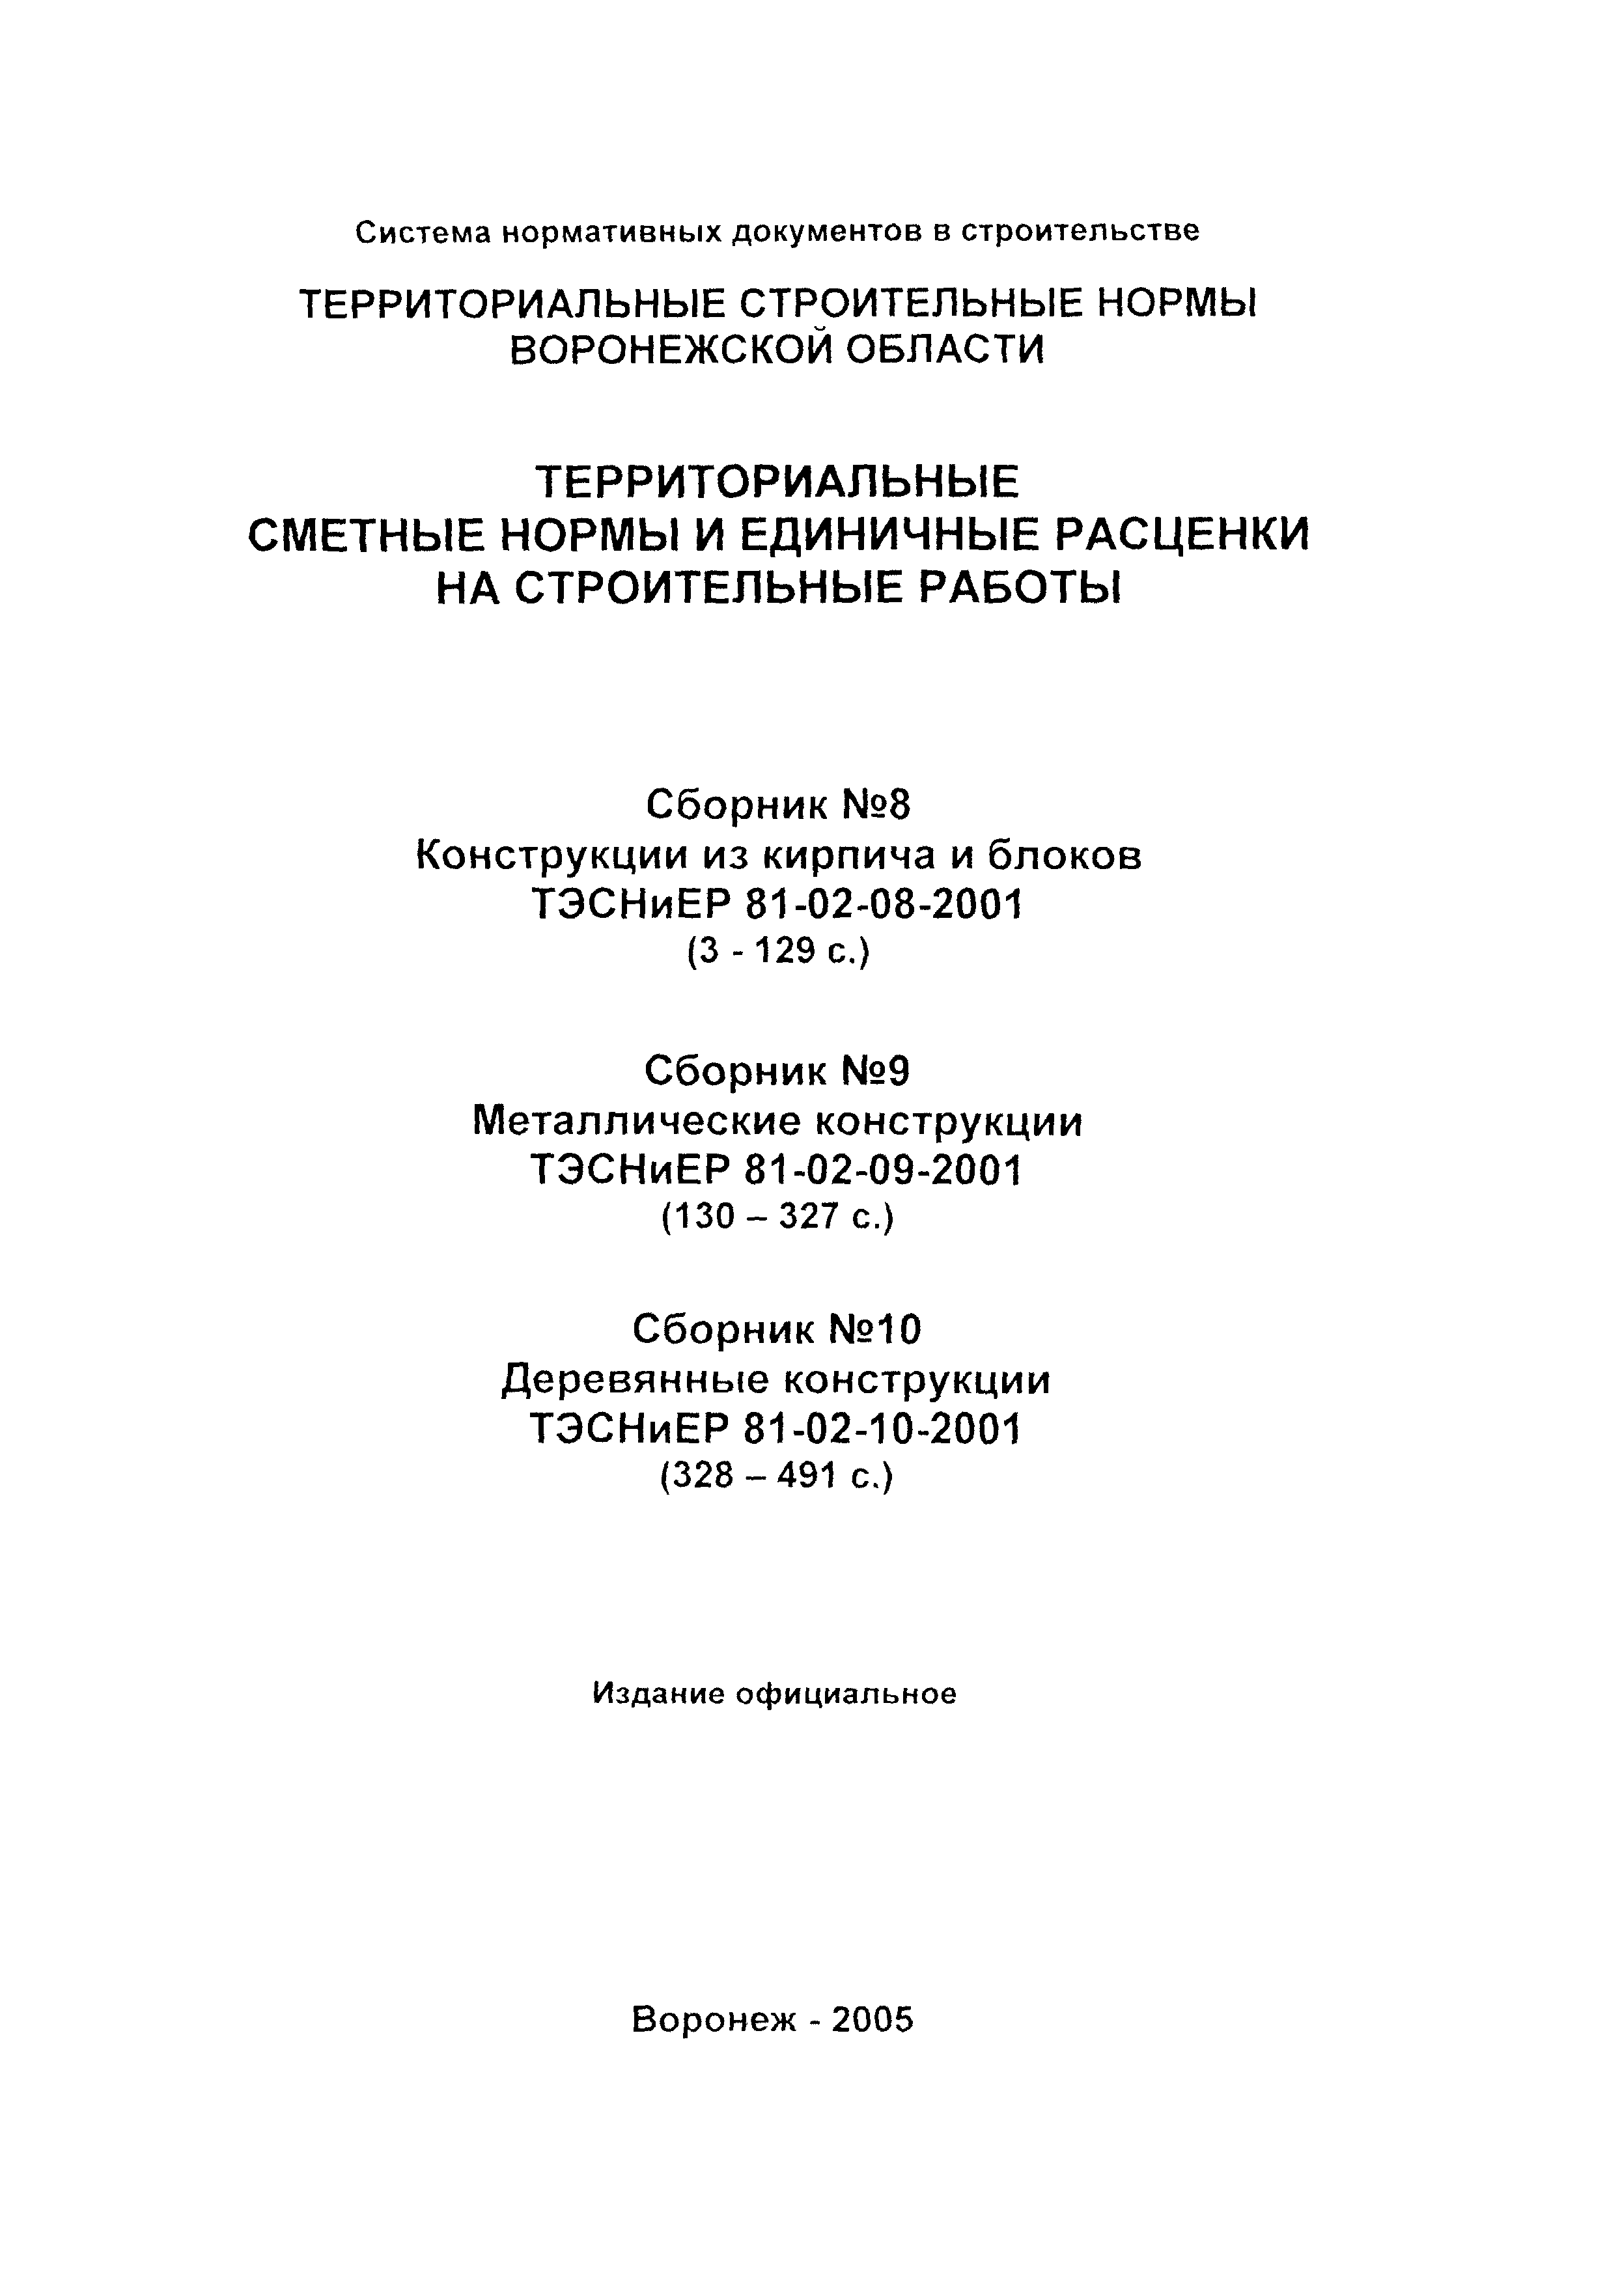 ТЭСНиЕР Воронежская область 81-02-10-2001